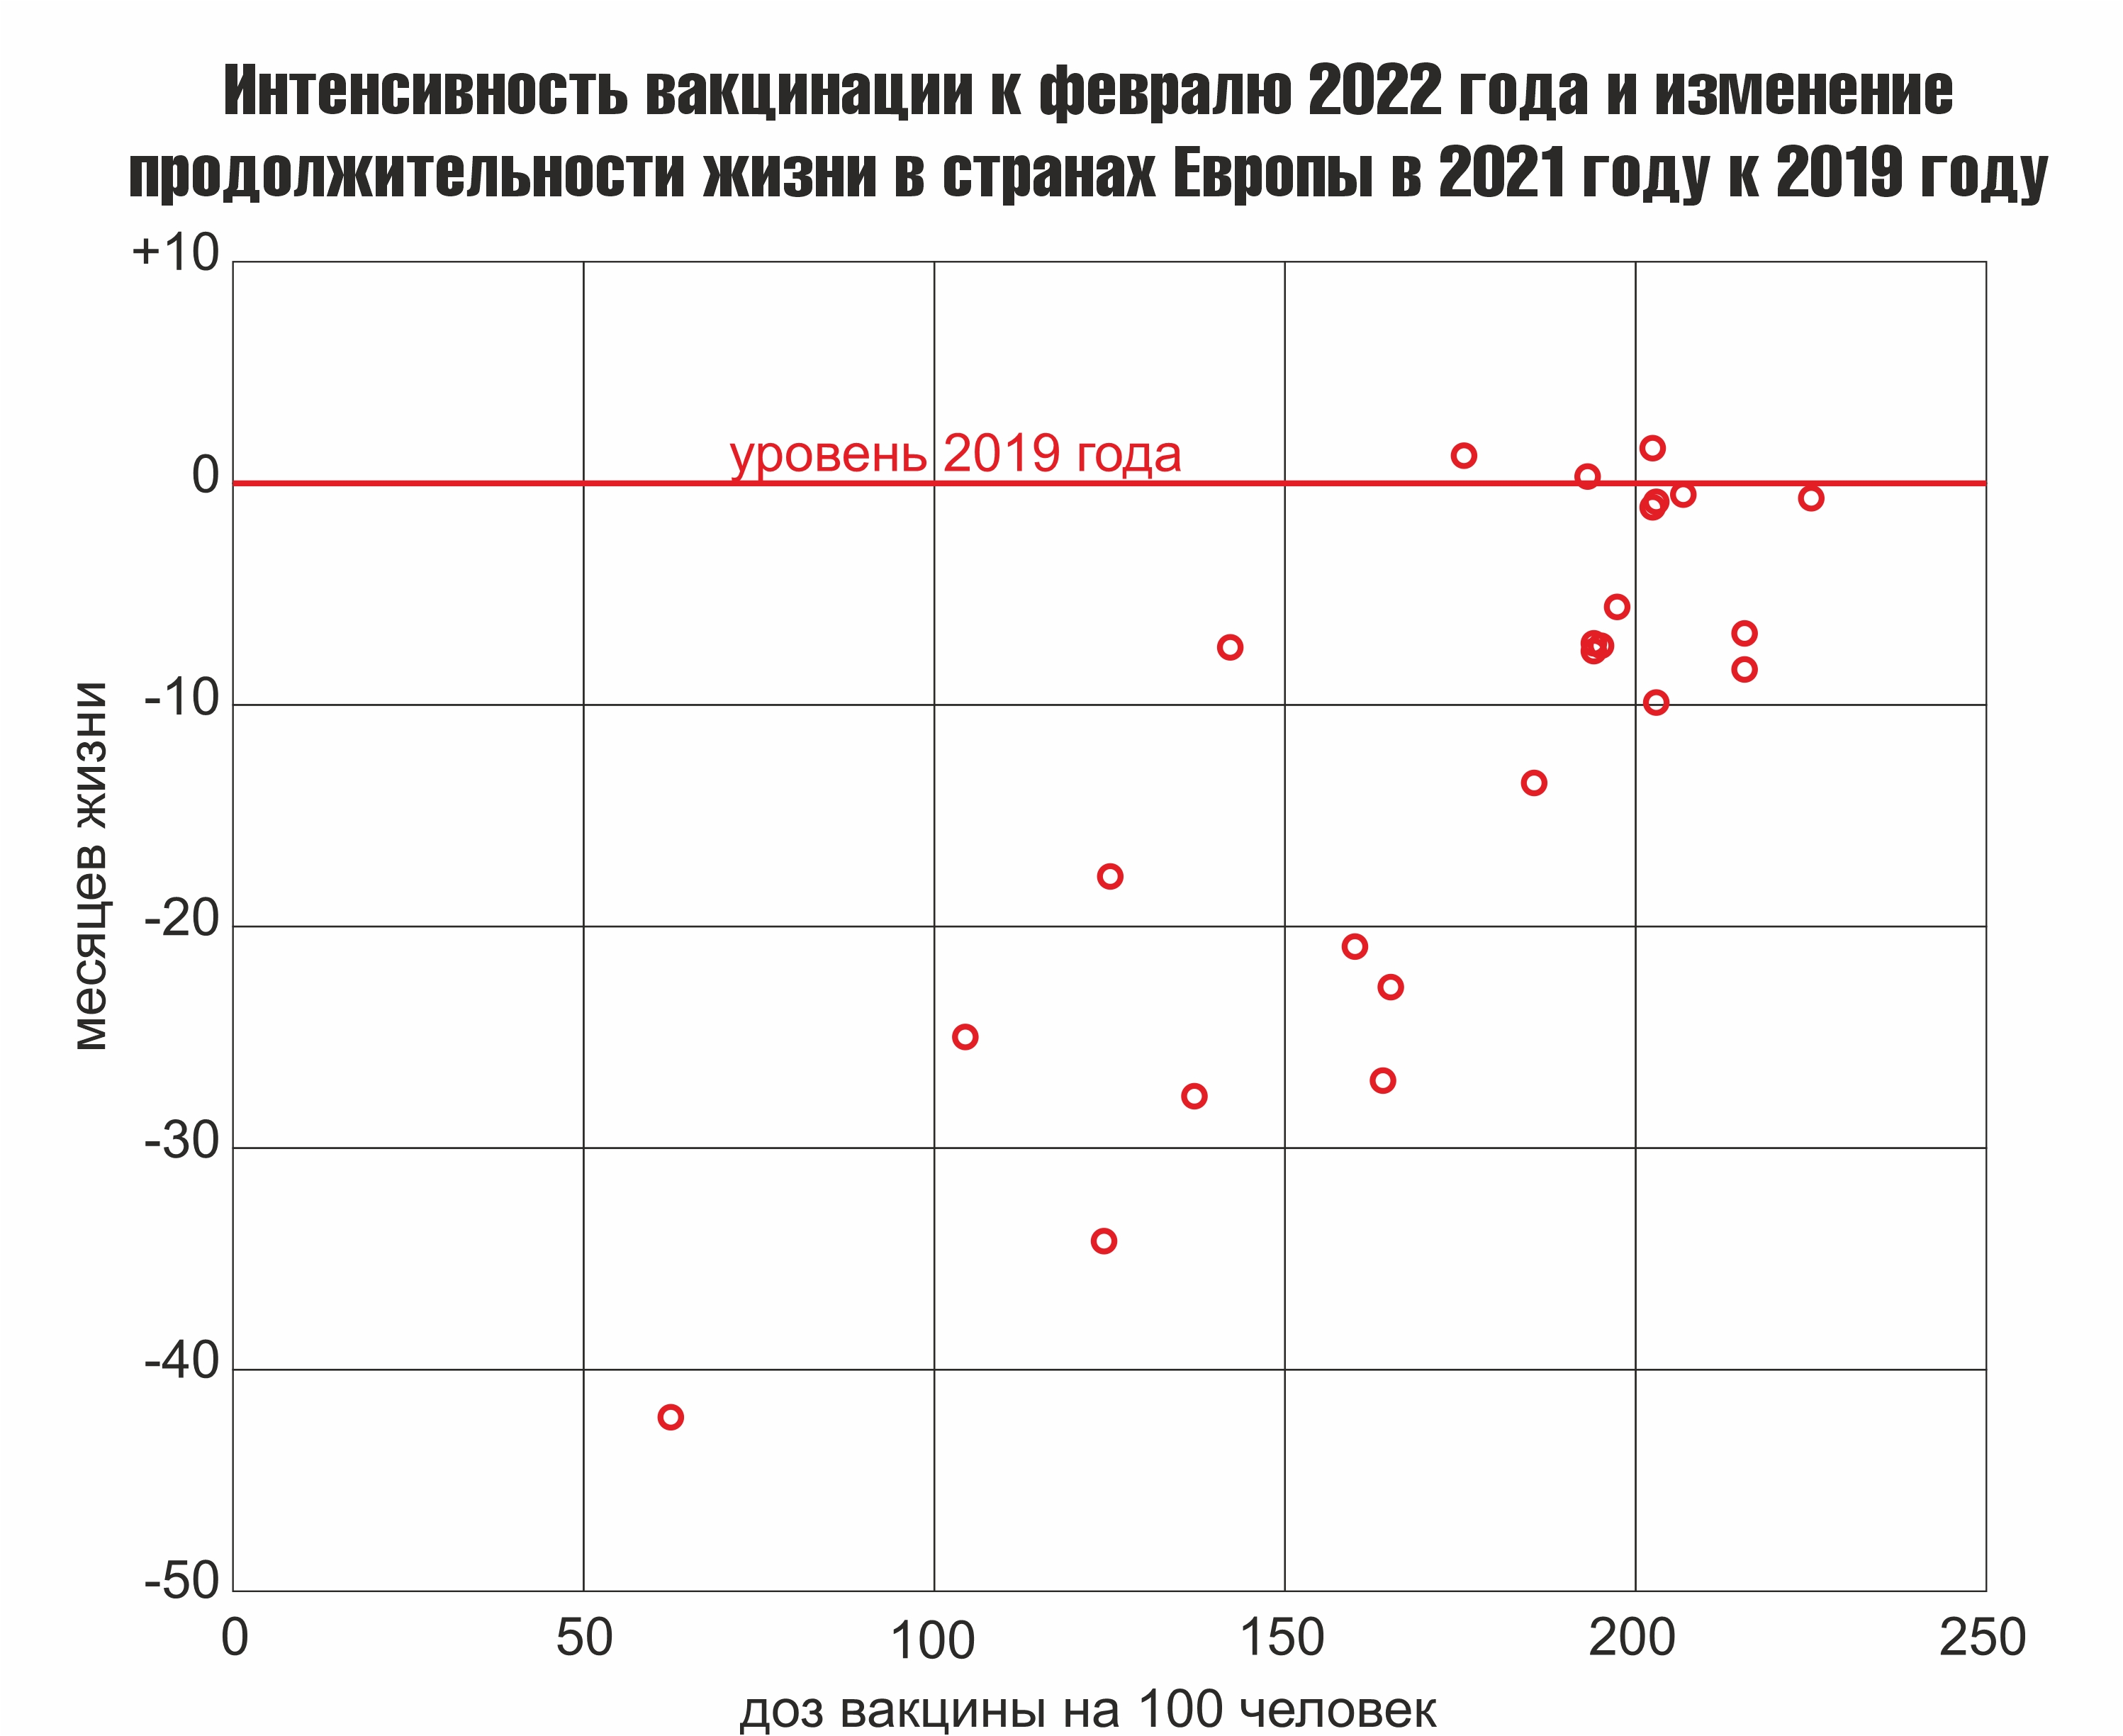 Интенсивность вакцинации к февралю 2022 года и изменение продолжительности жизни  в странах Европы в 2021 году к 2019 году